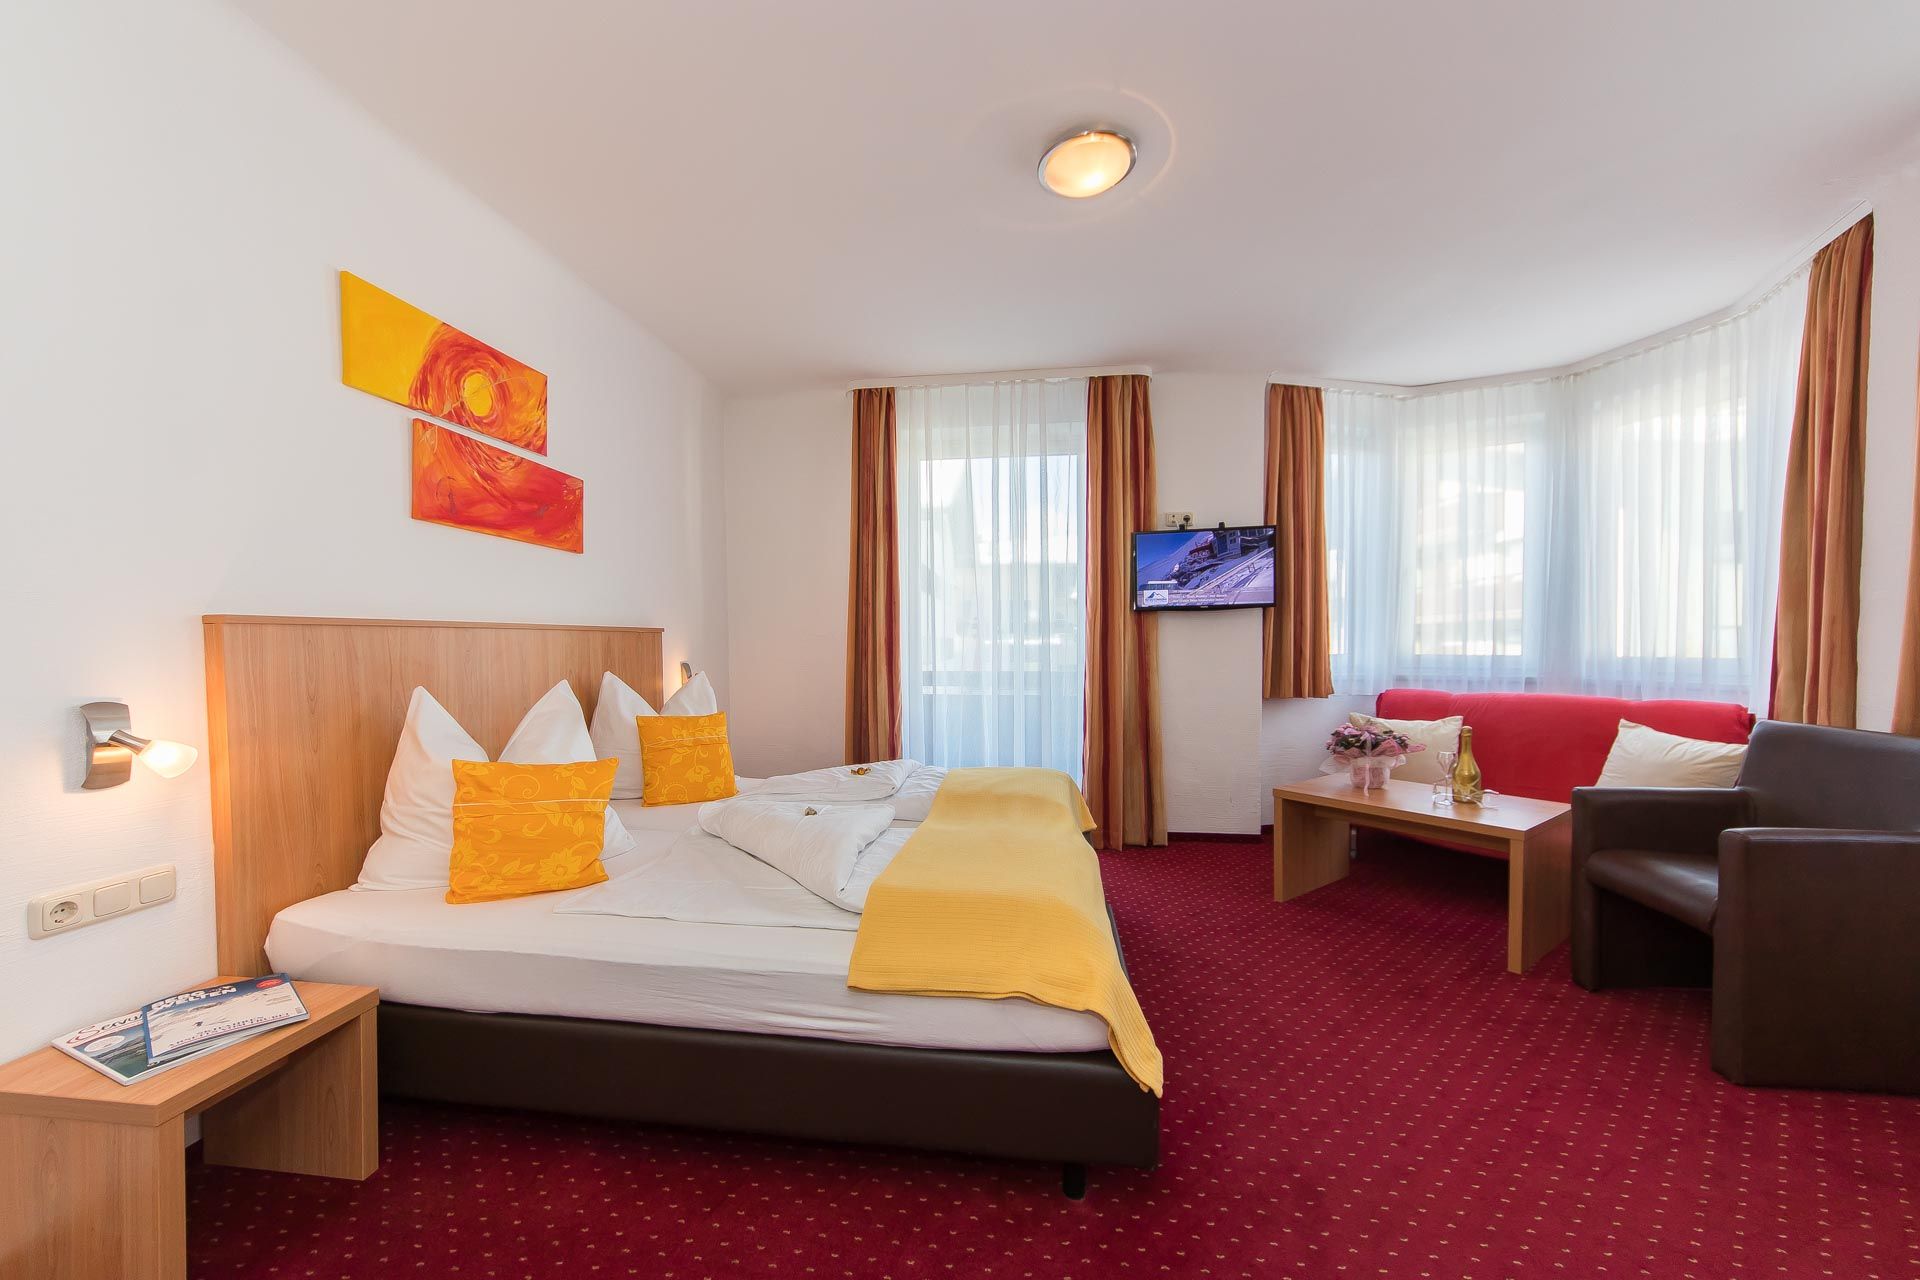 Urlaub im Doppelzimmer im Hotel Kitz in Bruck